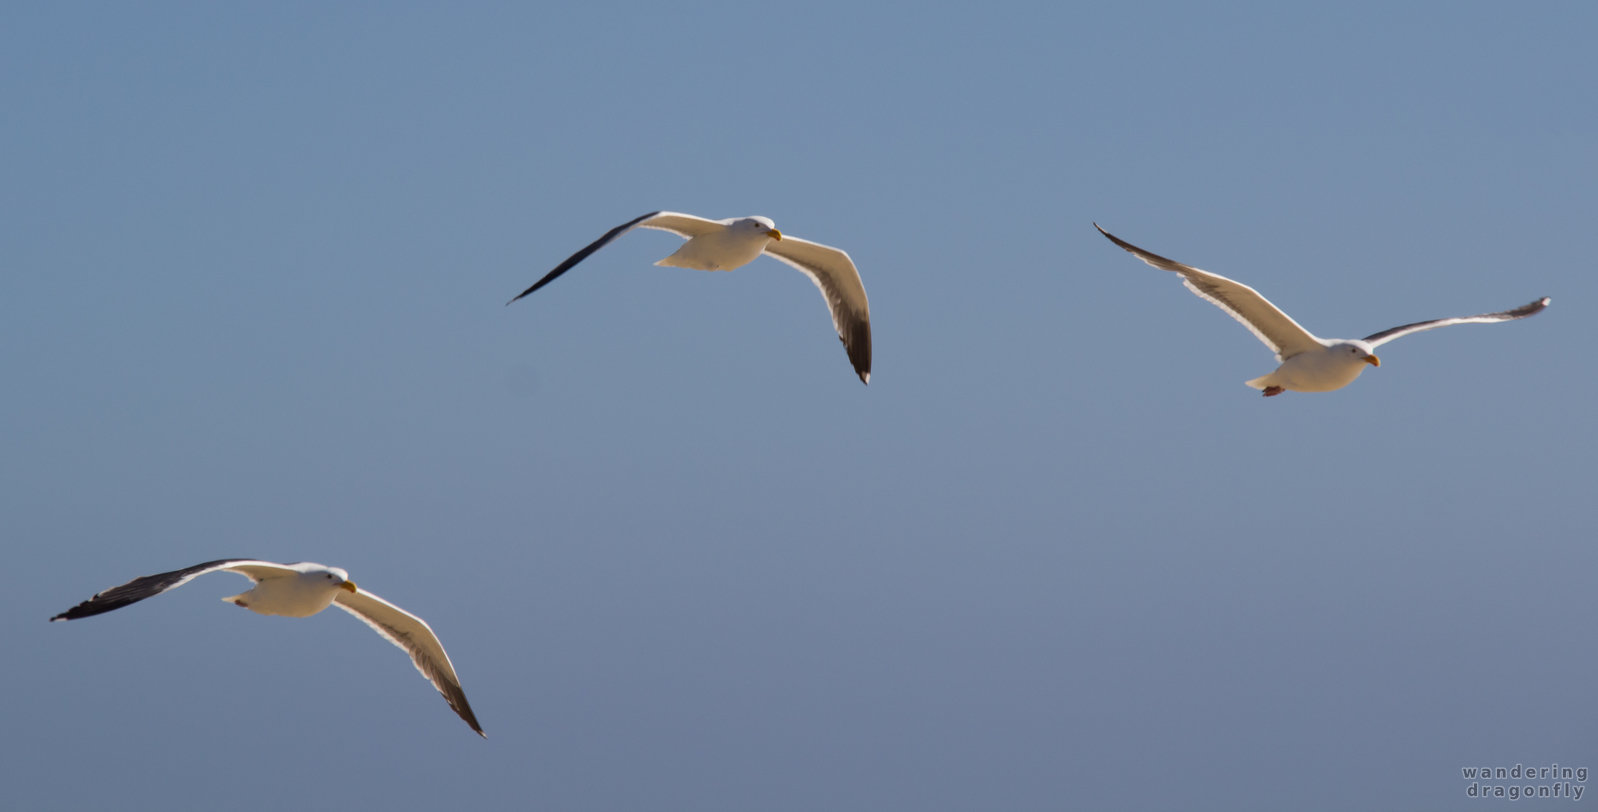 Three gulls -- gull